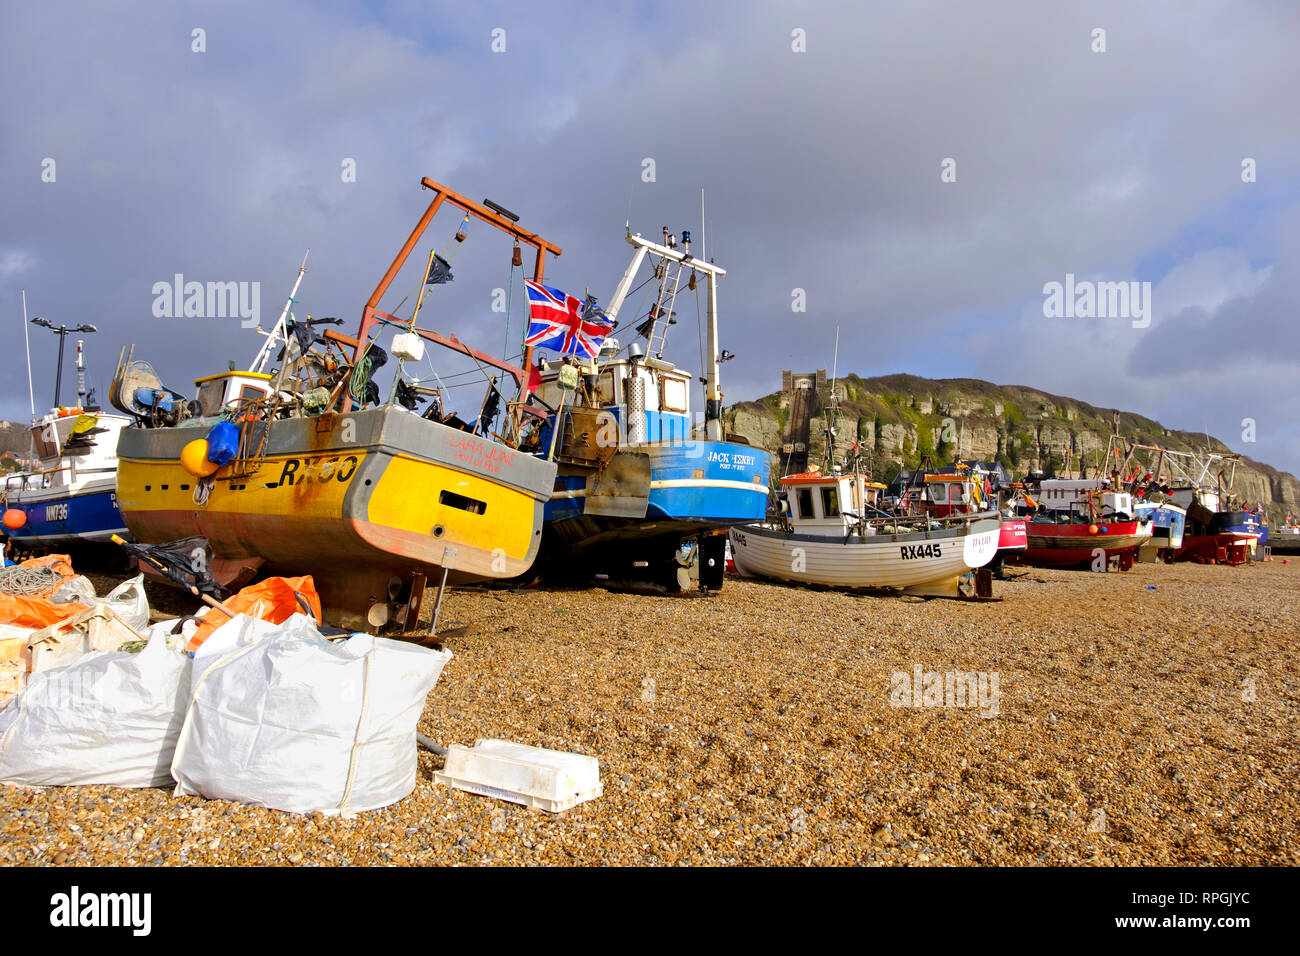 Bateaux de pêche d'Hastings tiré vers le haut sur la vieille ville Stade beach, East Sussex, UK Banque D'Images